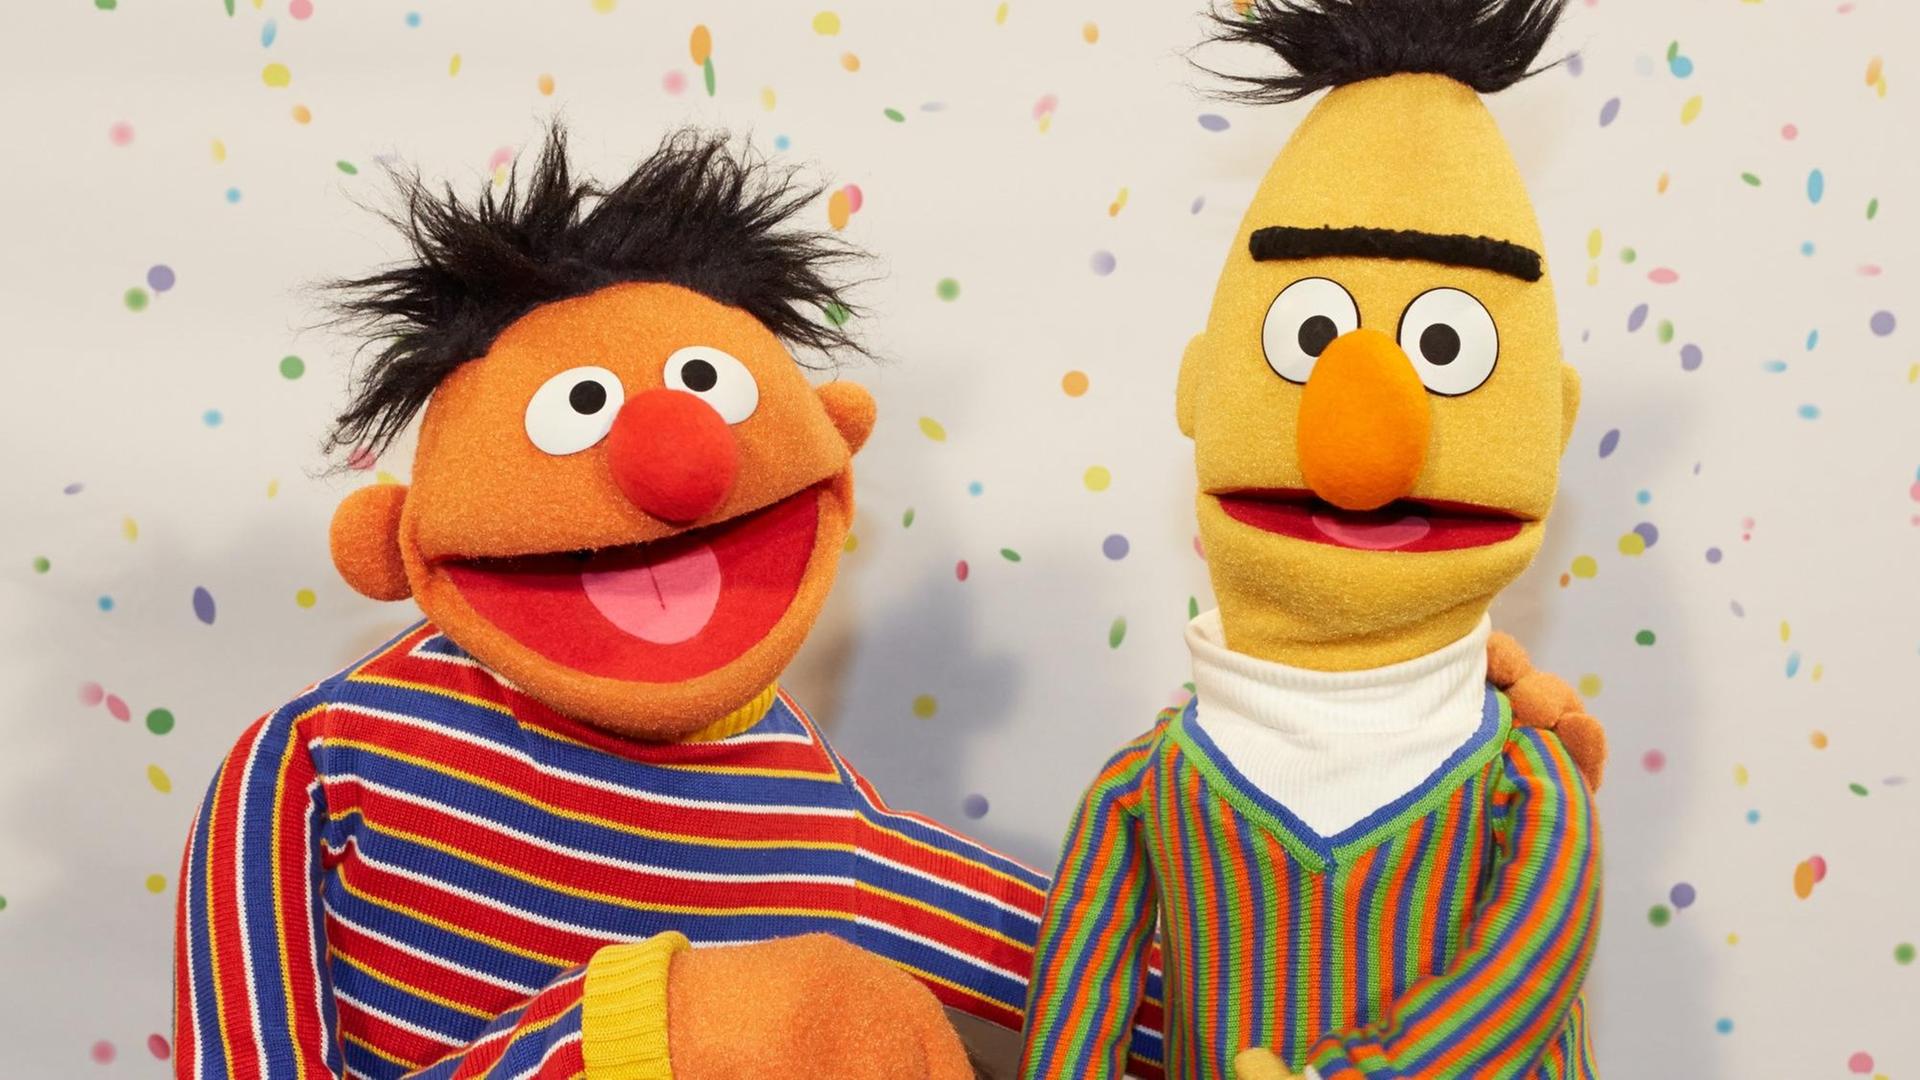 Die Figuren Ernie und Bert aus der Sesam-Straße